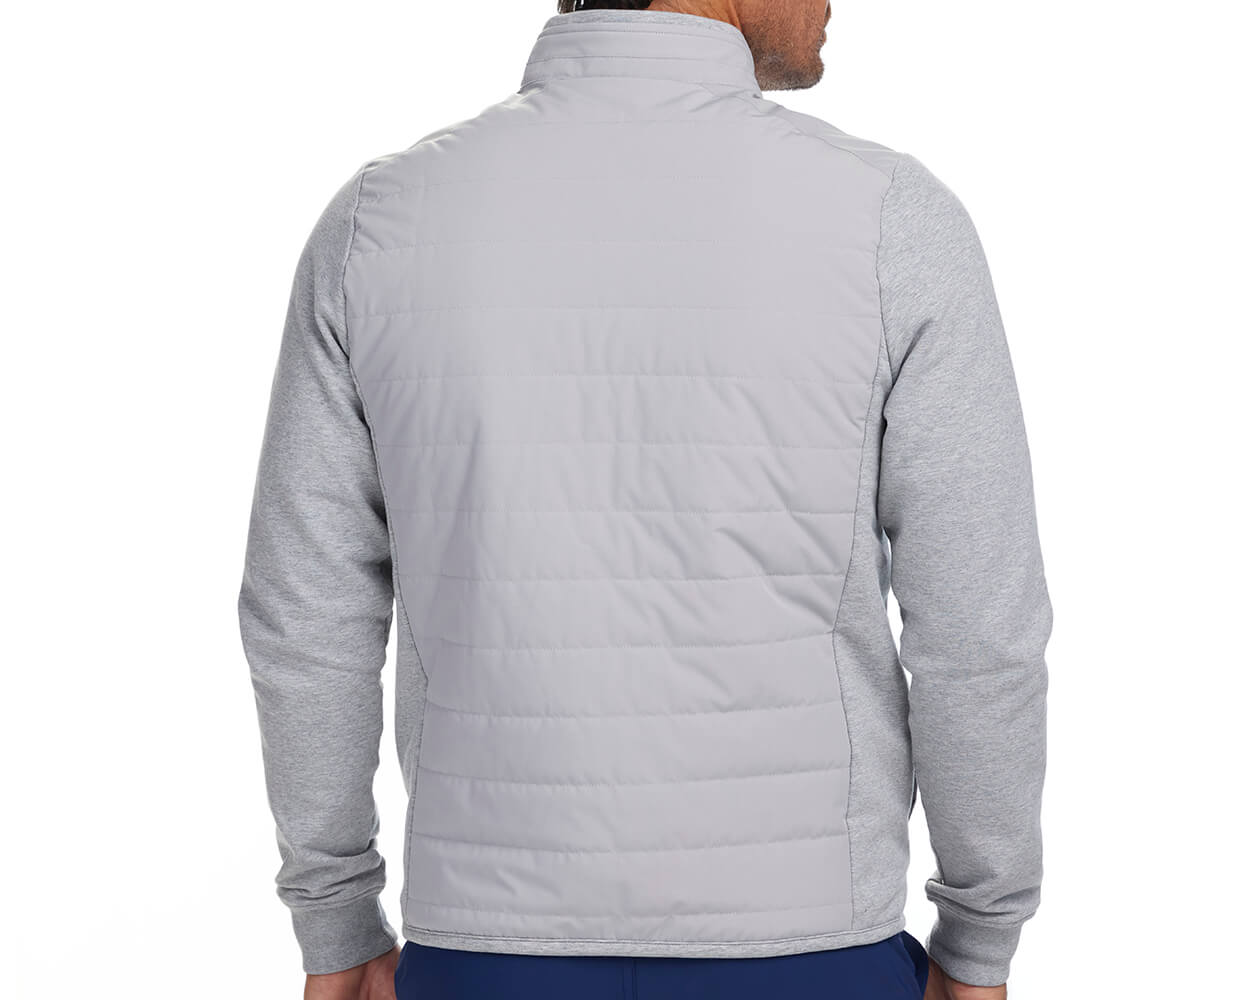 Back shot of Holderness and Bourne gray fleece jacket modeled on man's torso.